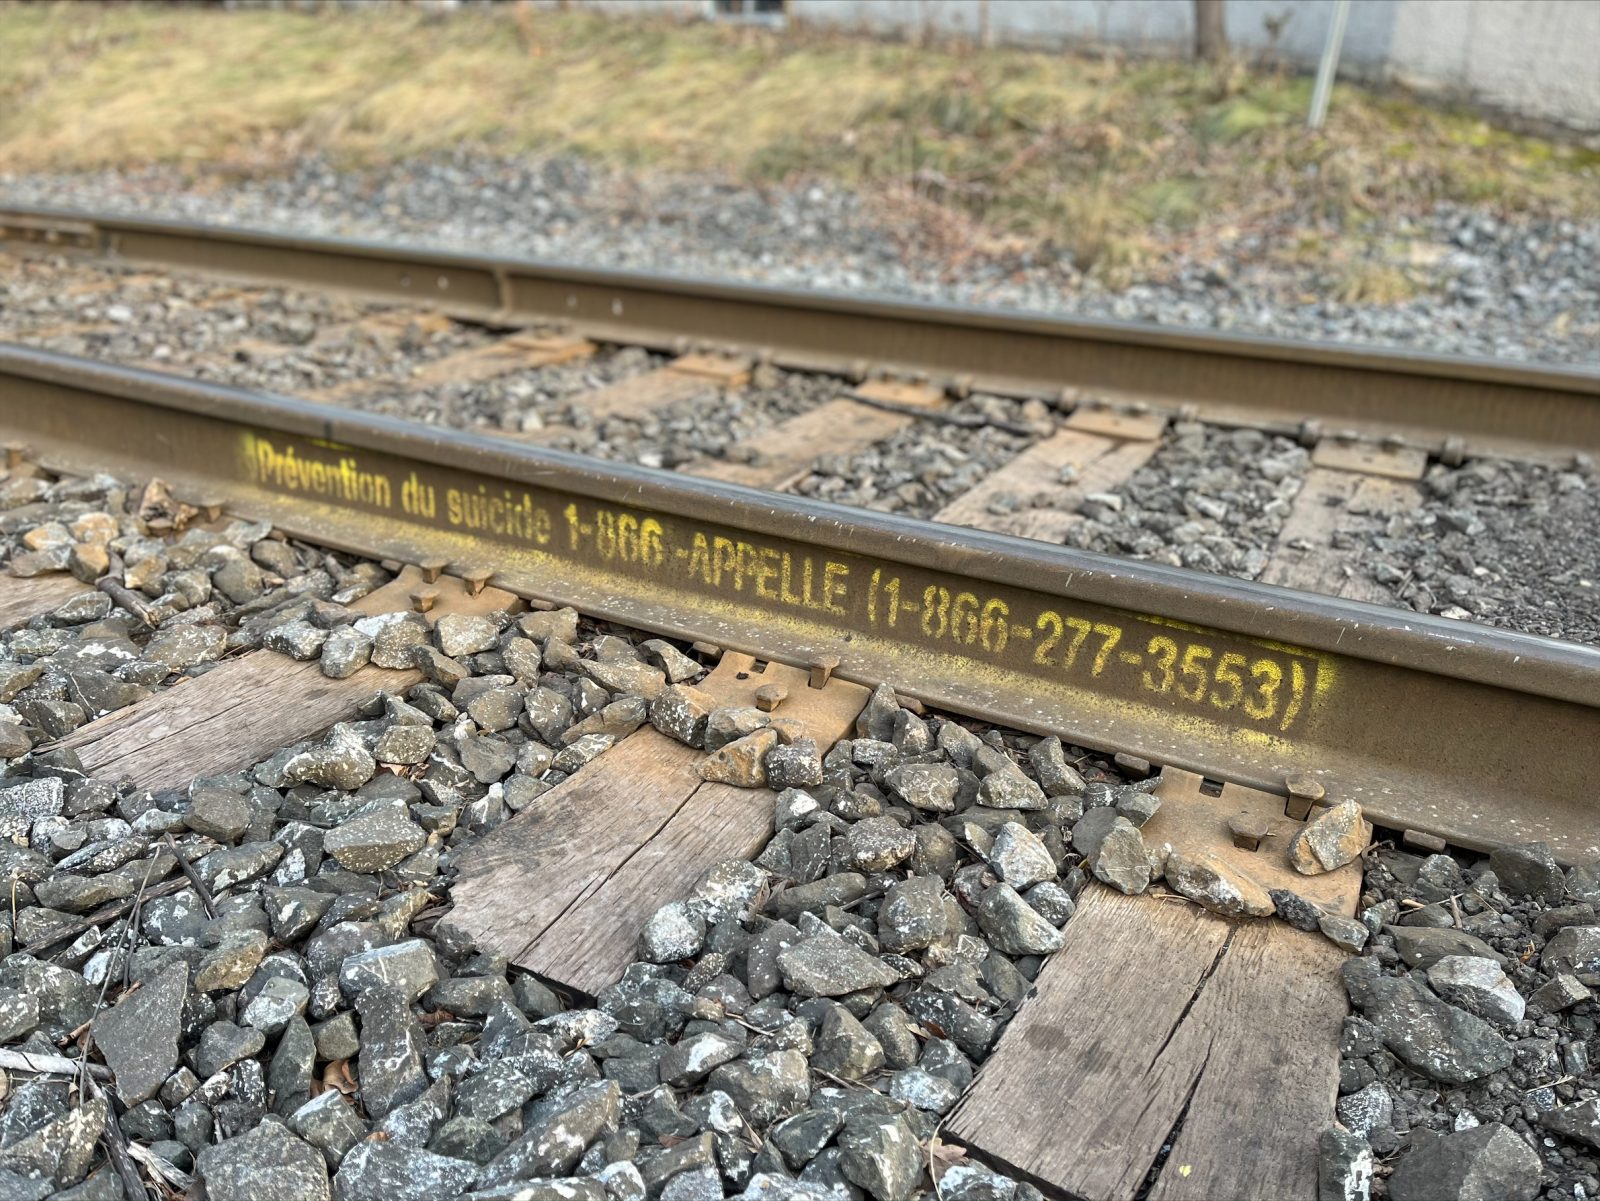 Le 1-866-APPELLE peint sur les rails à Drummondville